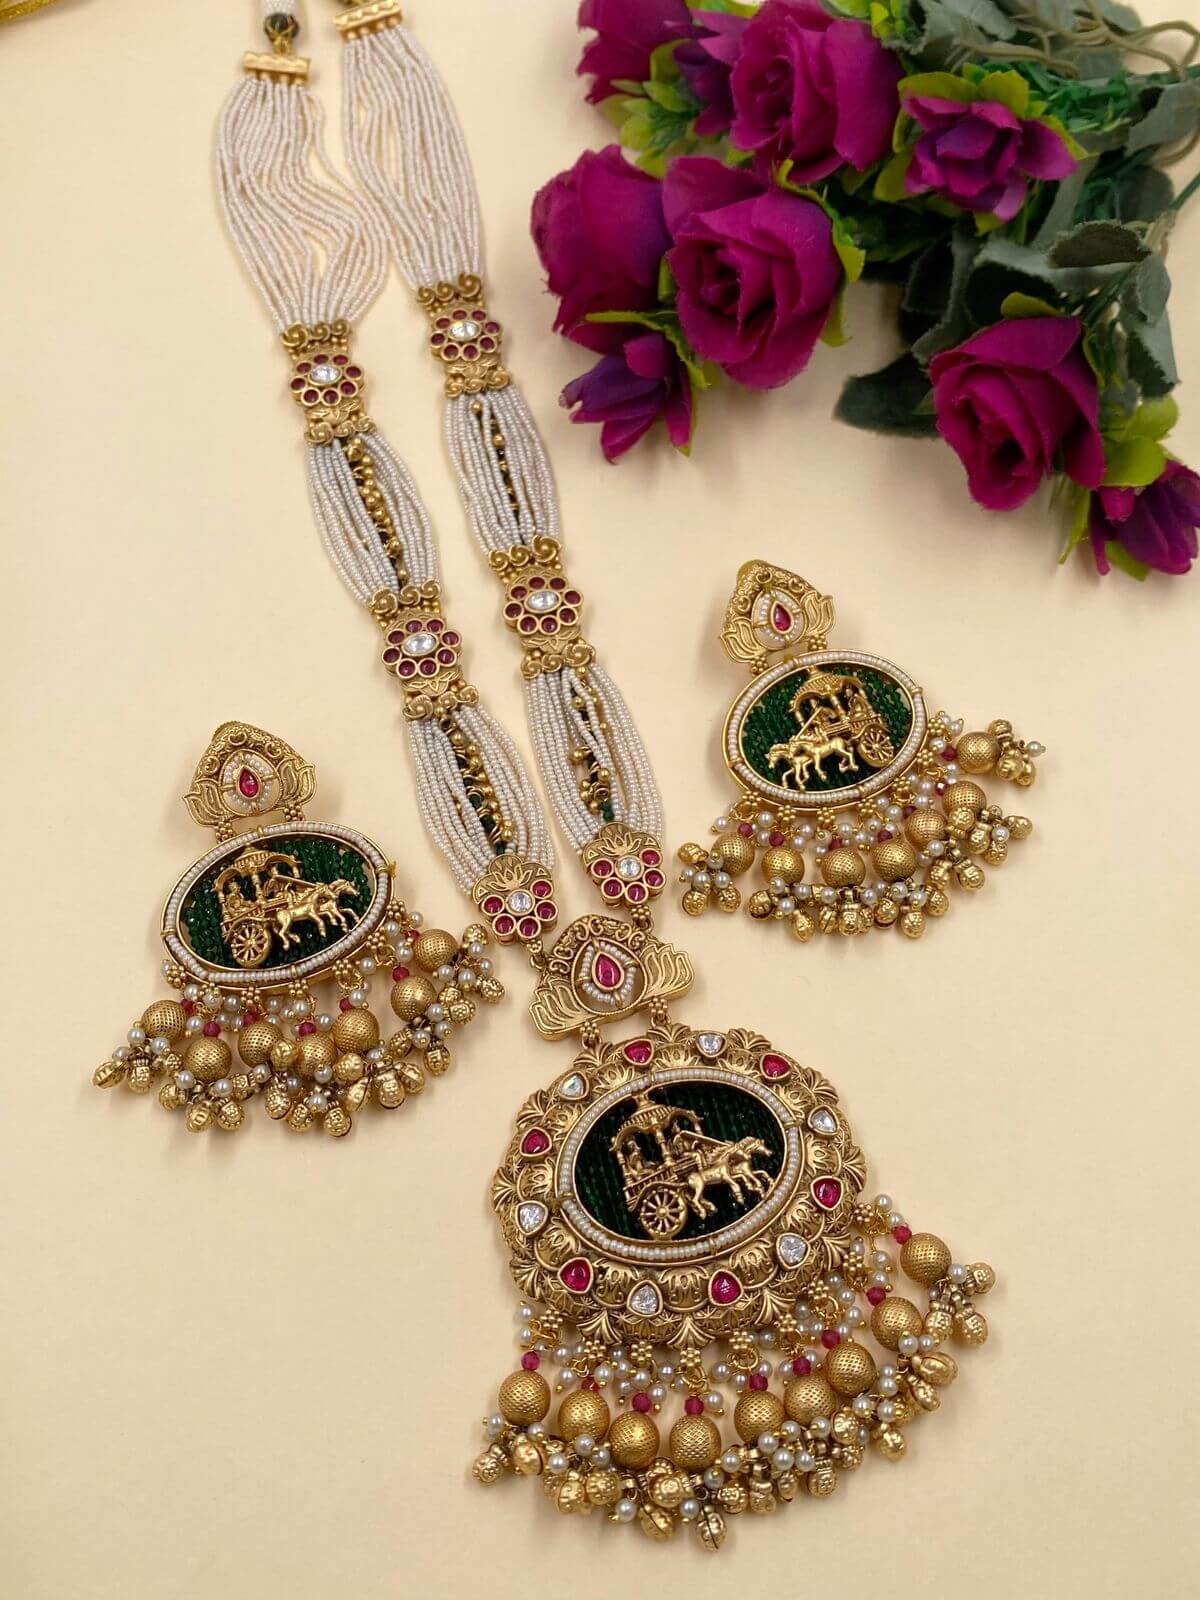 Antique Golden Long Necklace Set